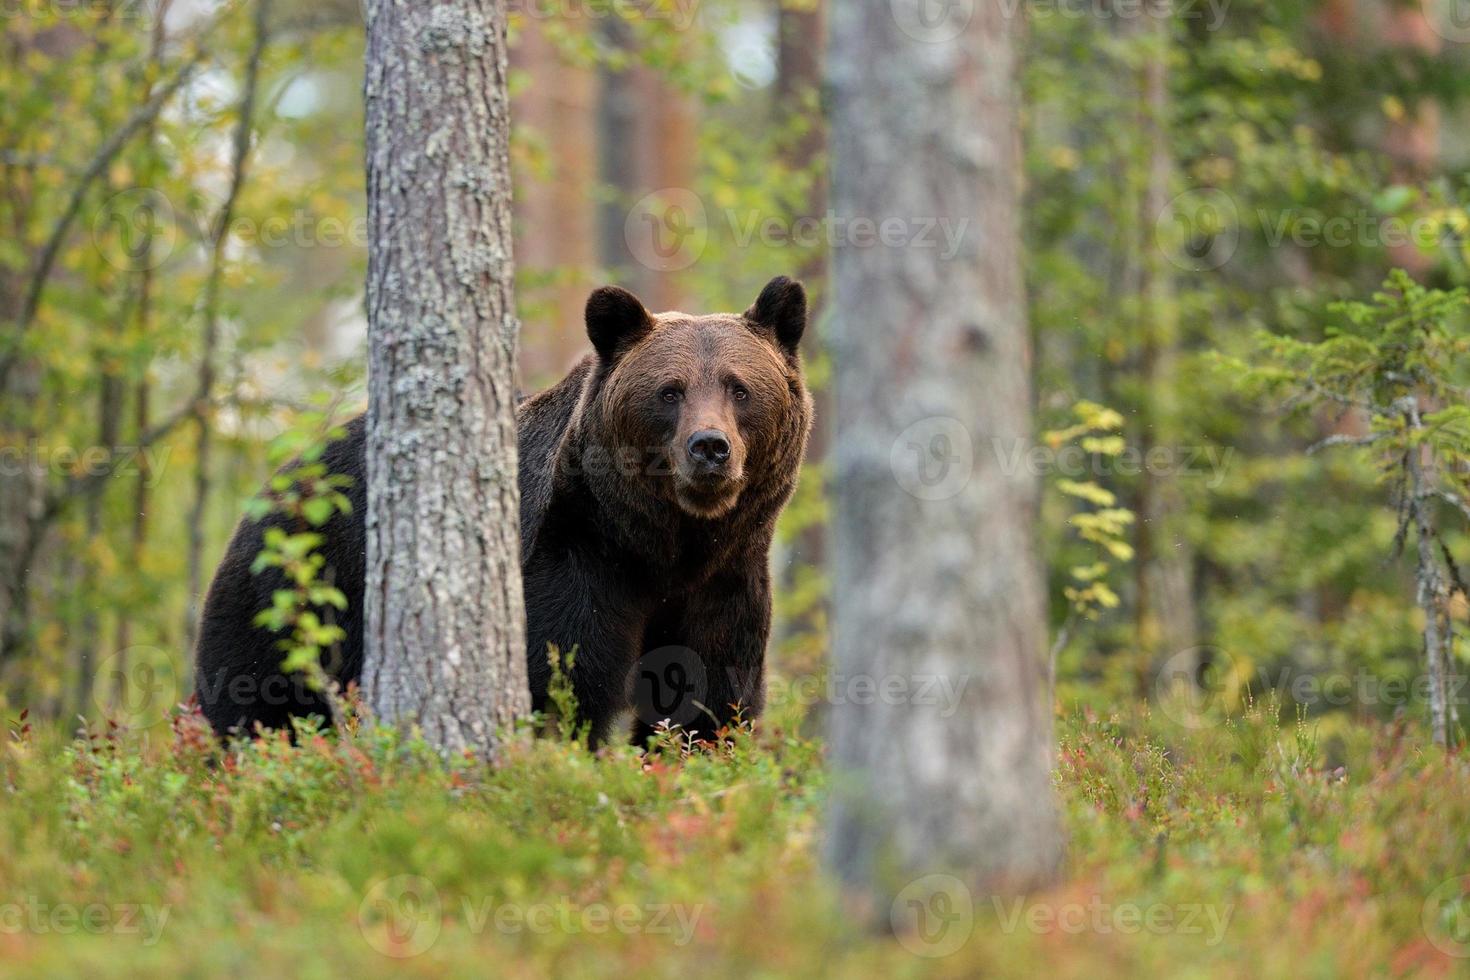 bruine beer in het bos foto